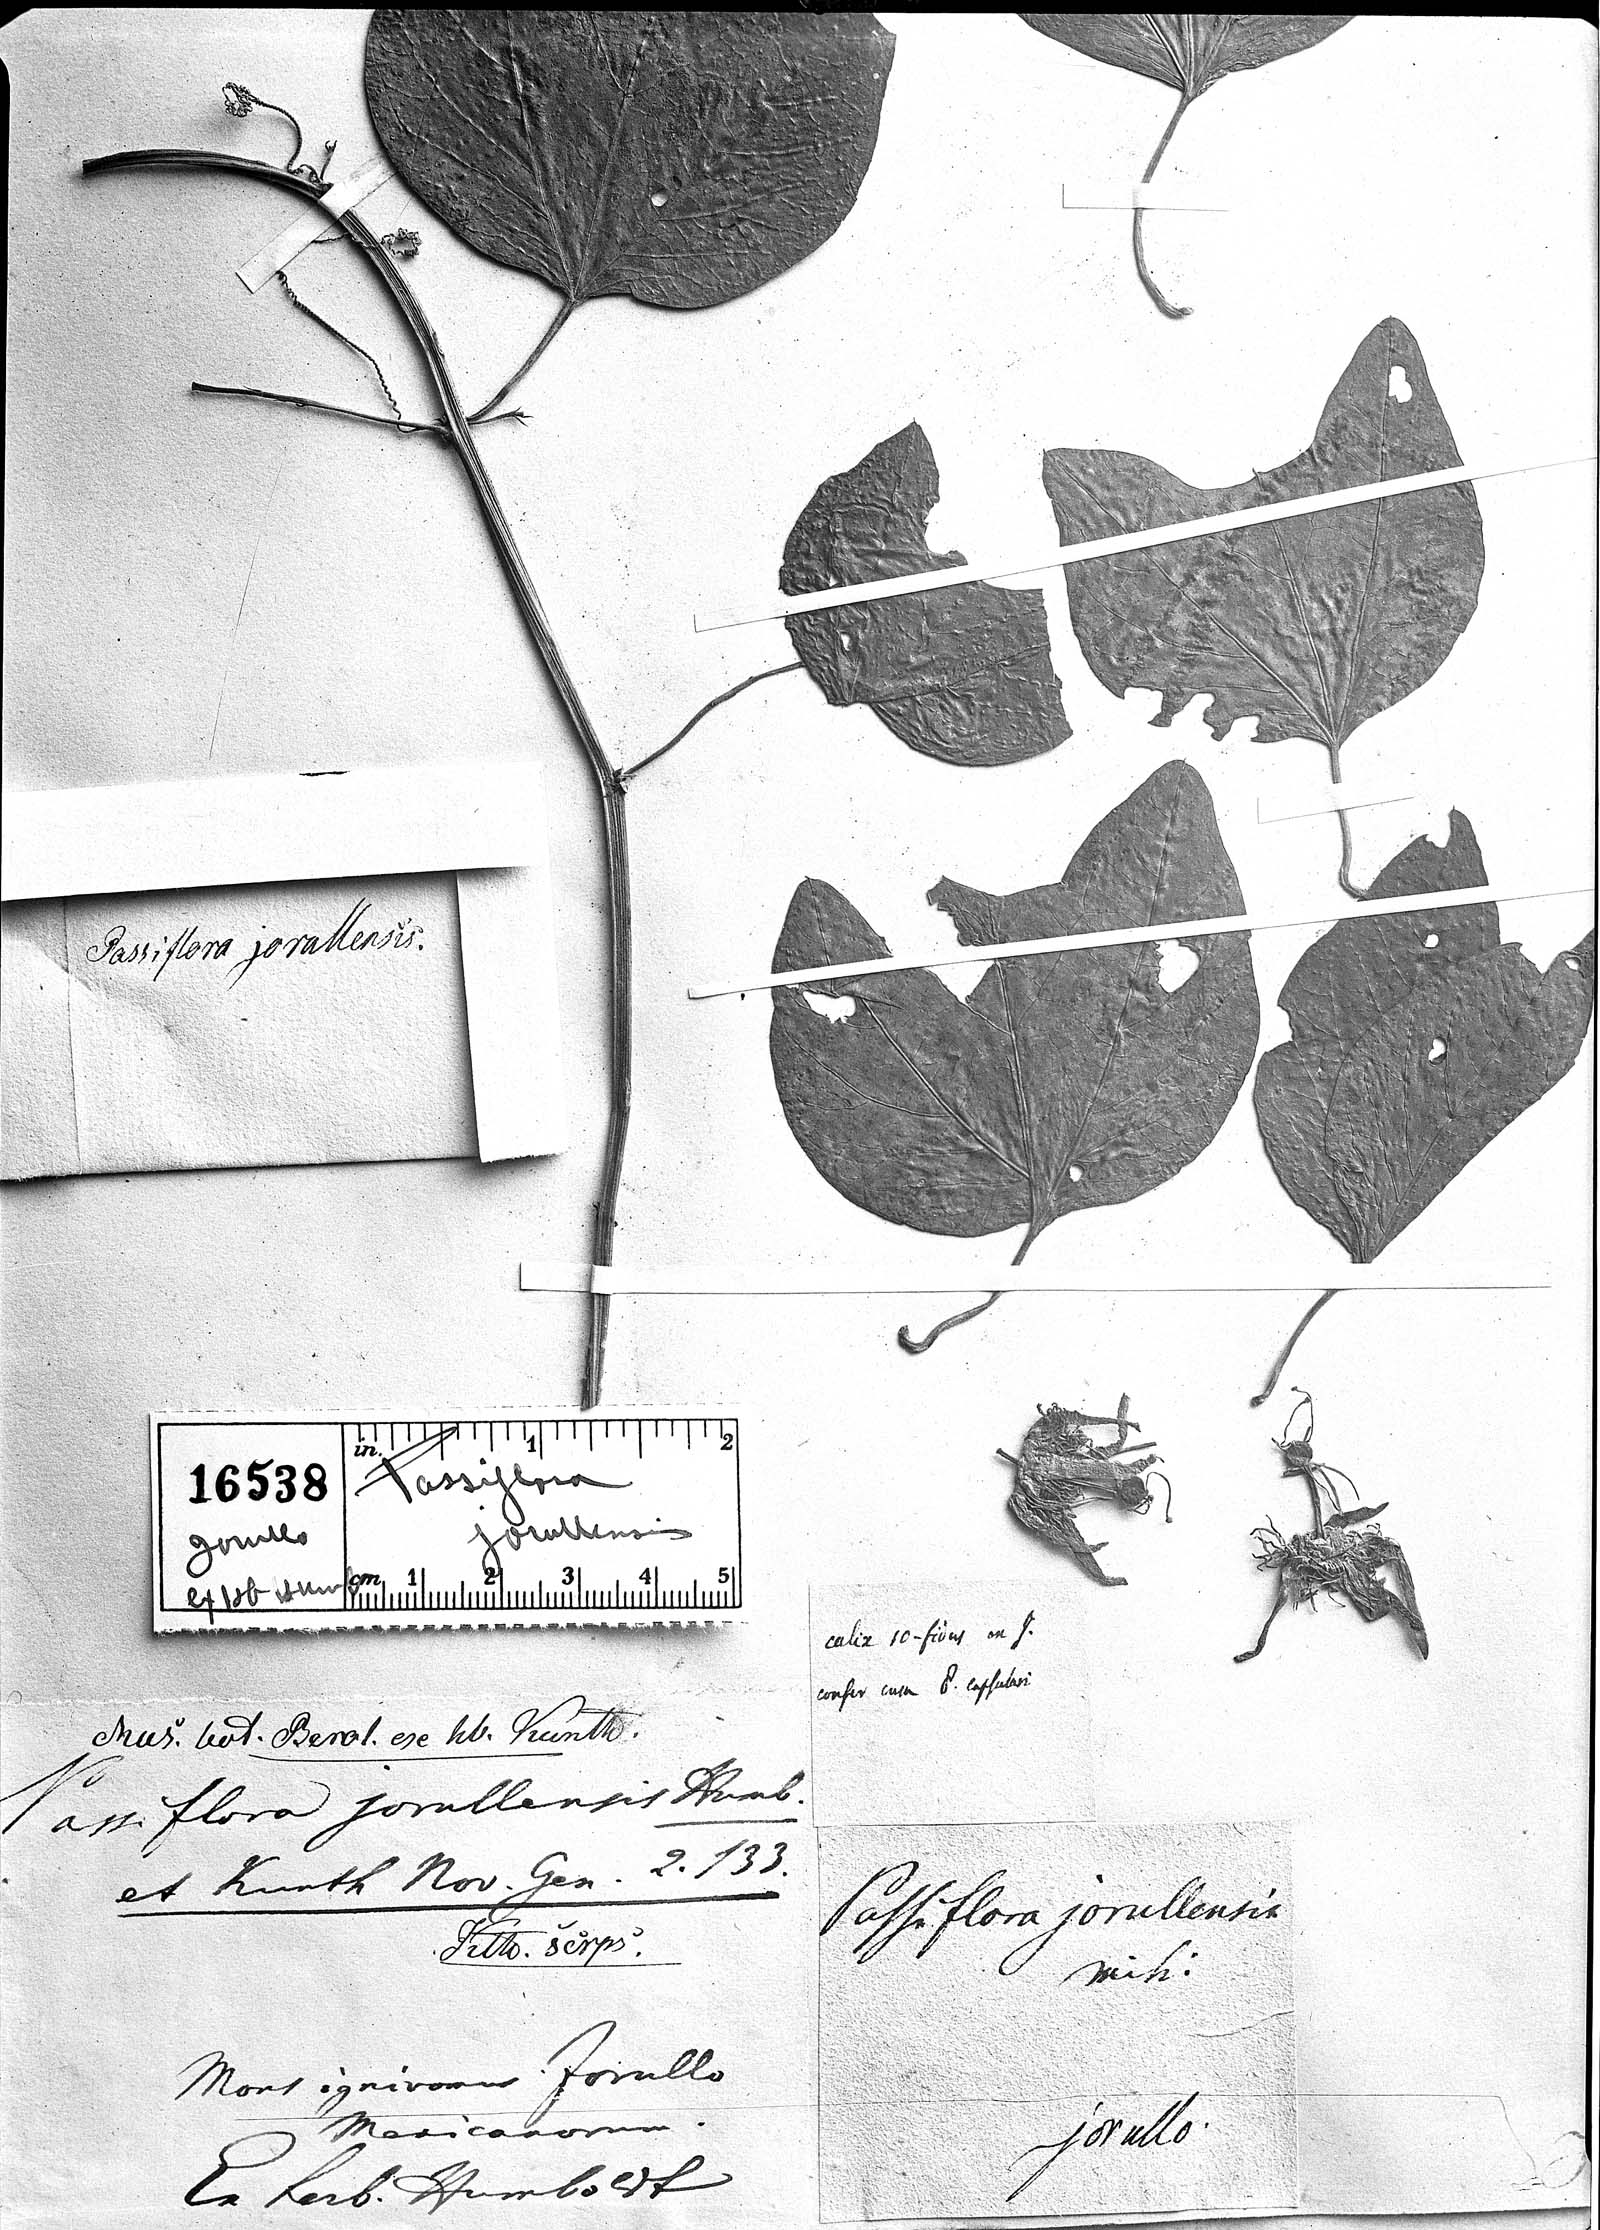 Passiflora jorullensis image